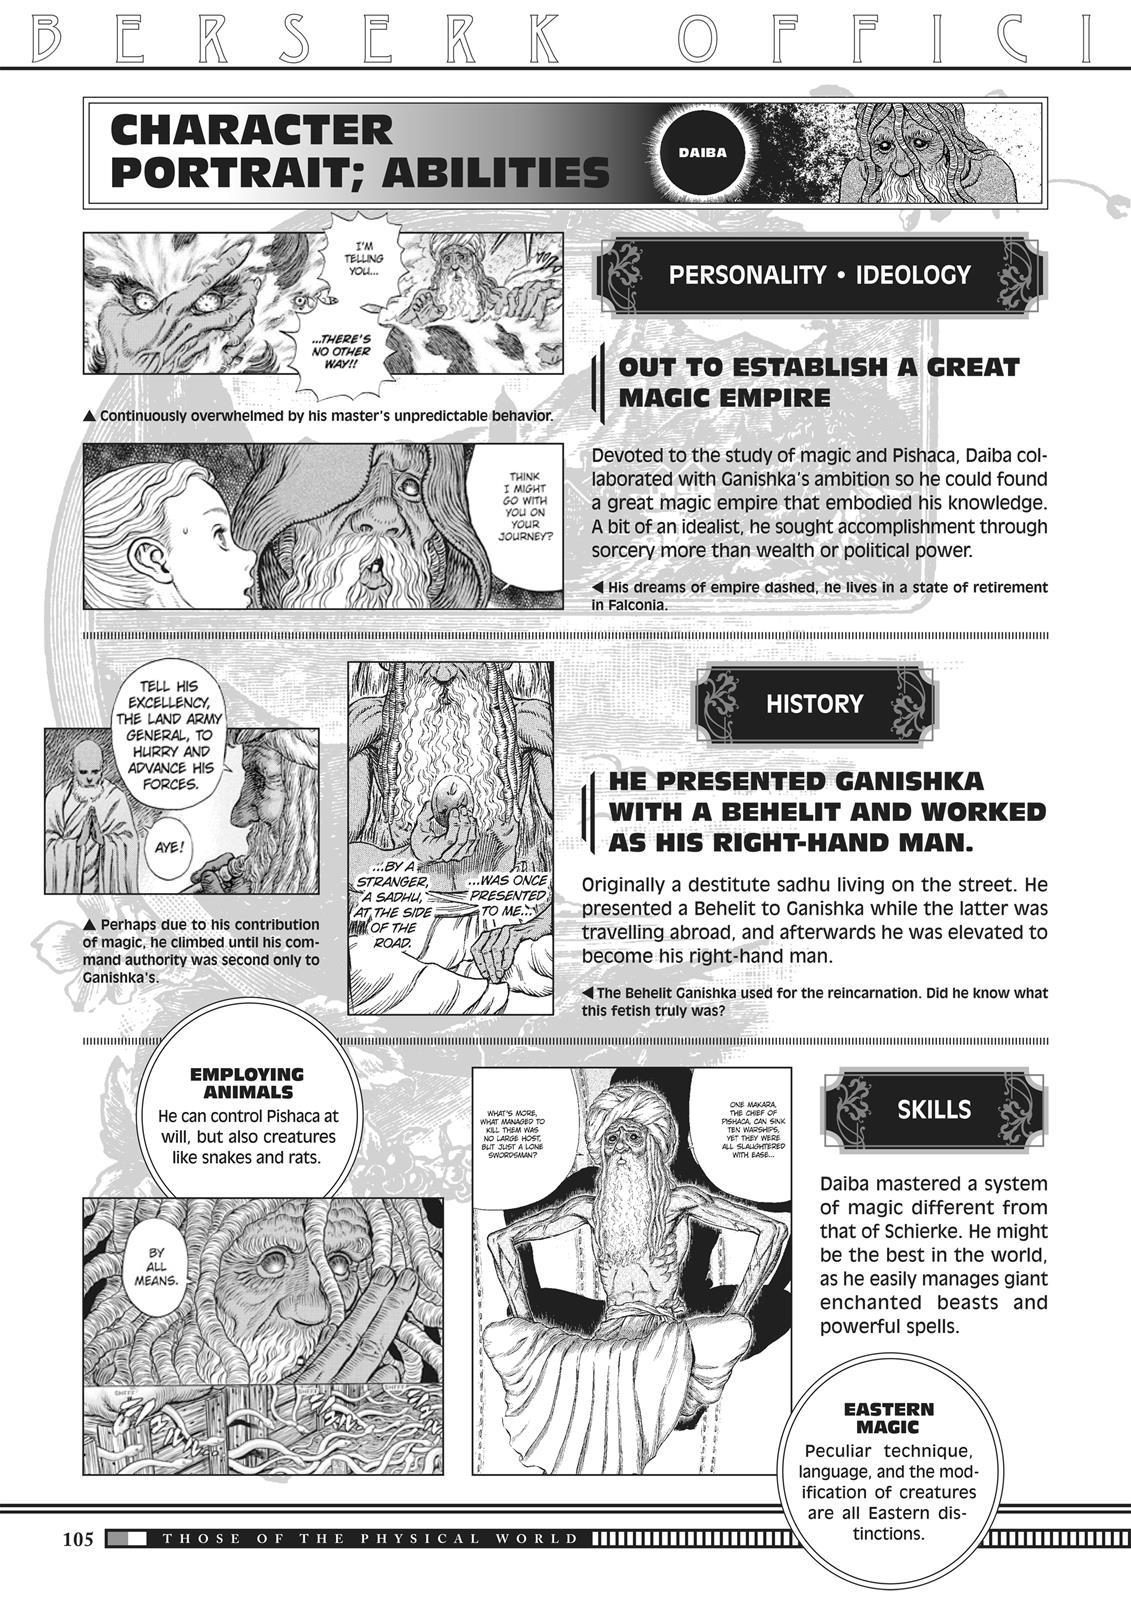 Berserk Manga Chapter 350.5 image 103